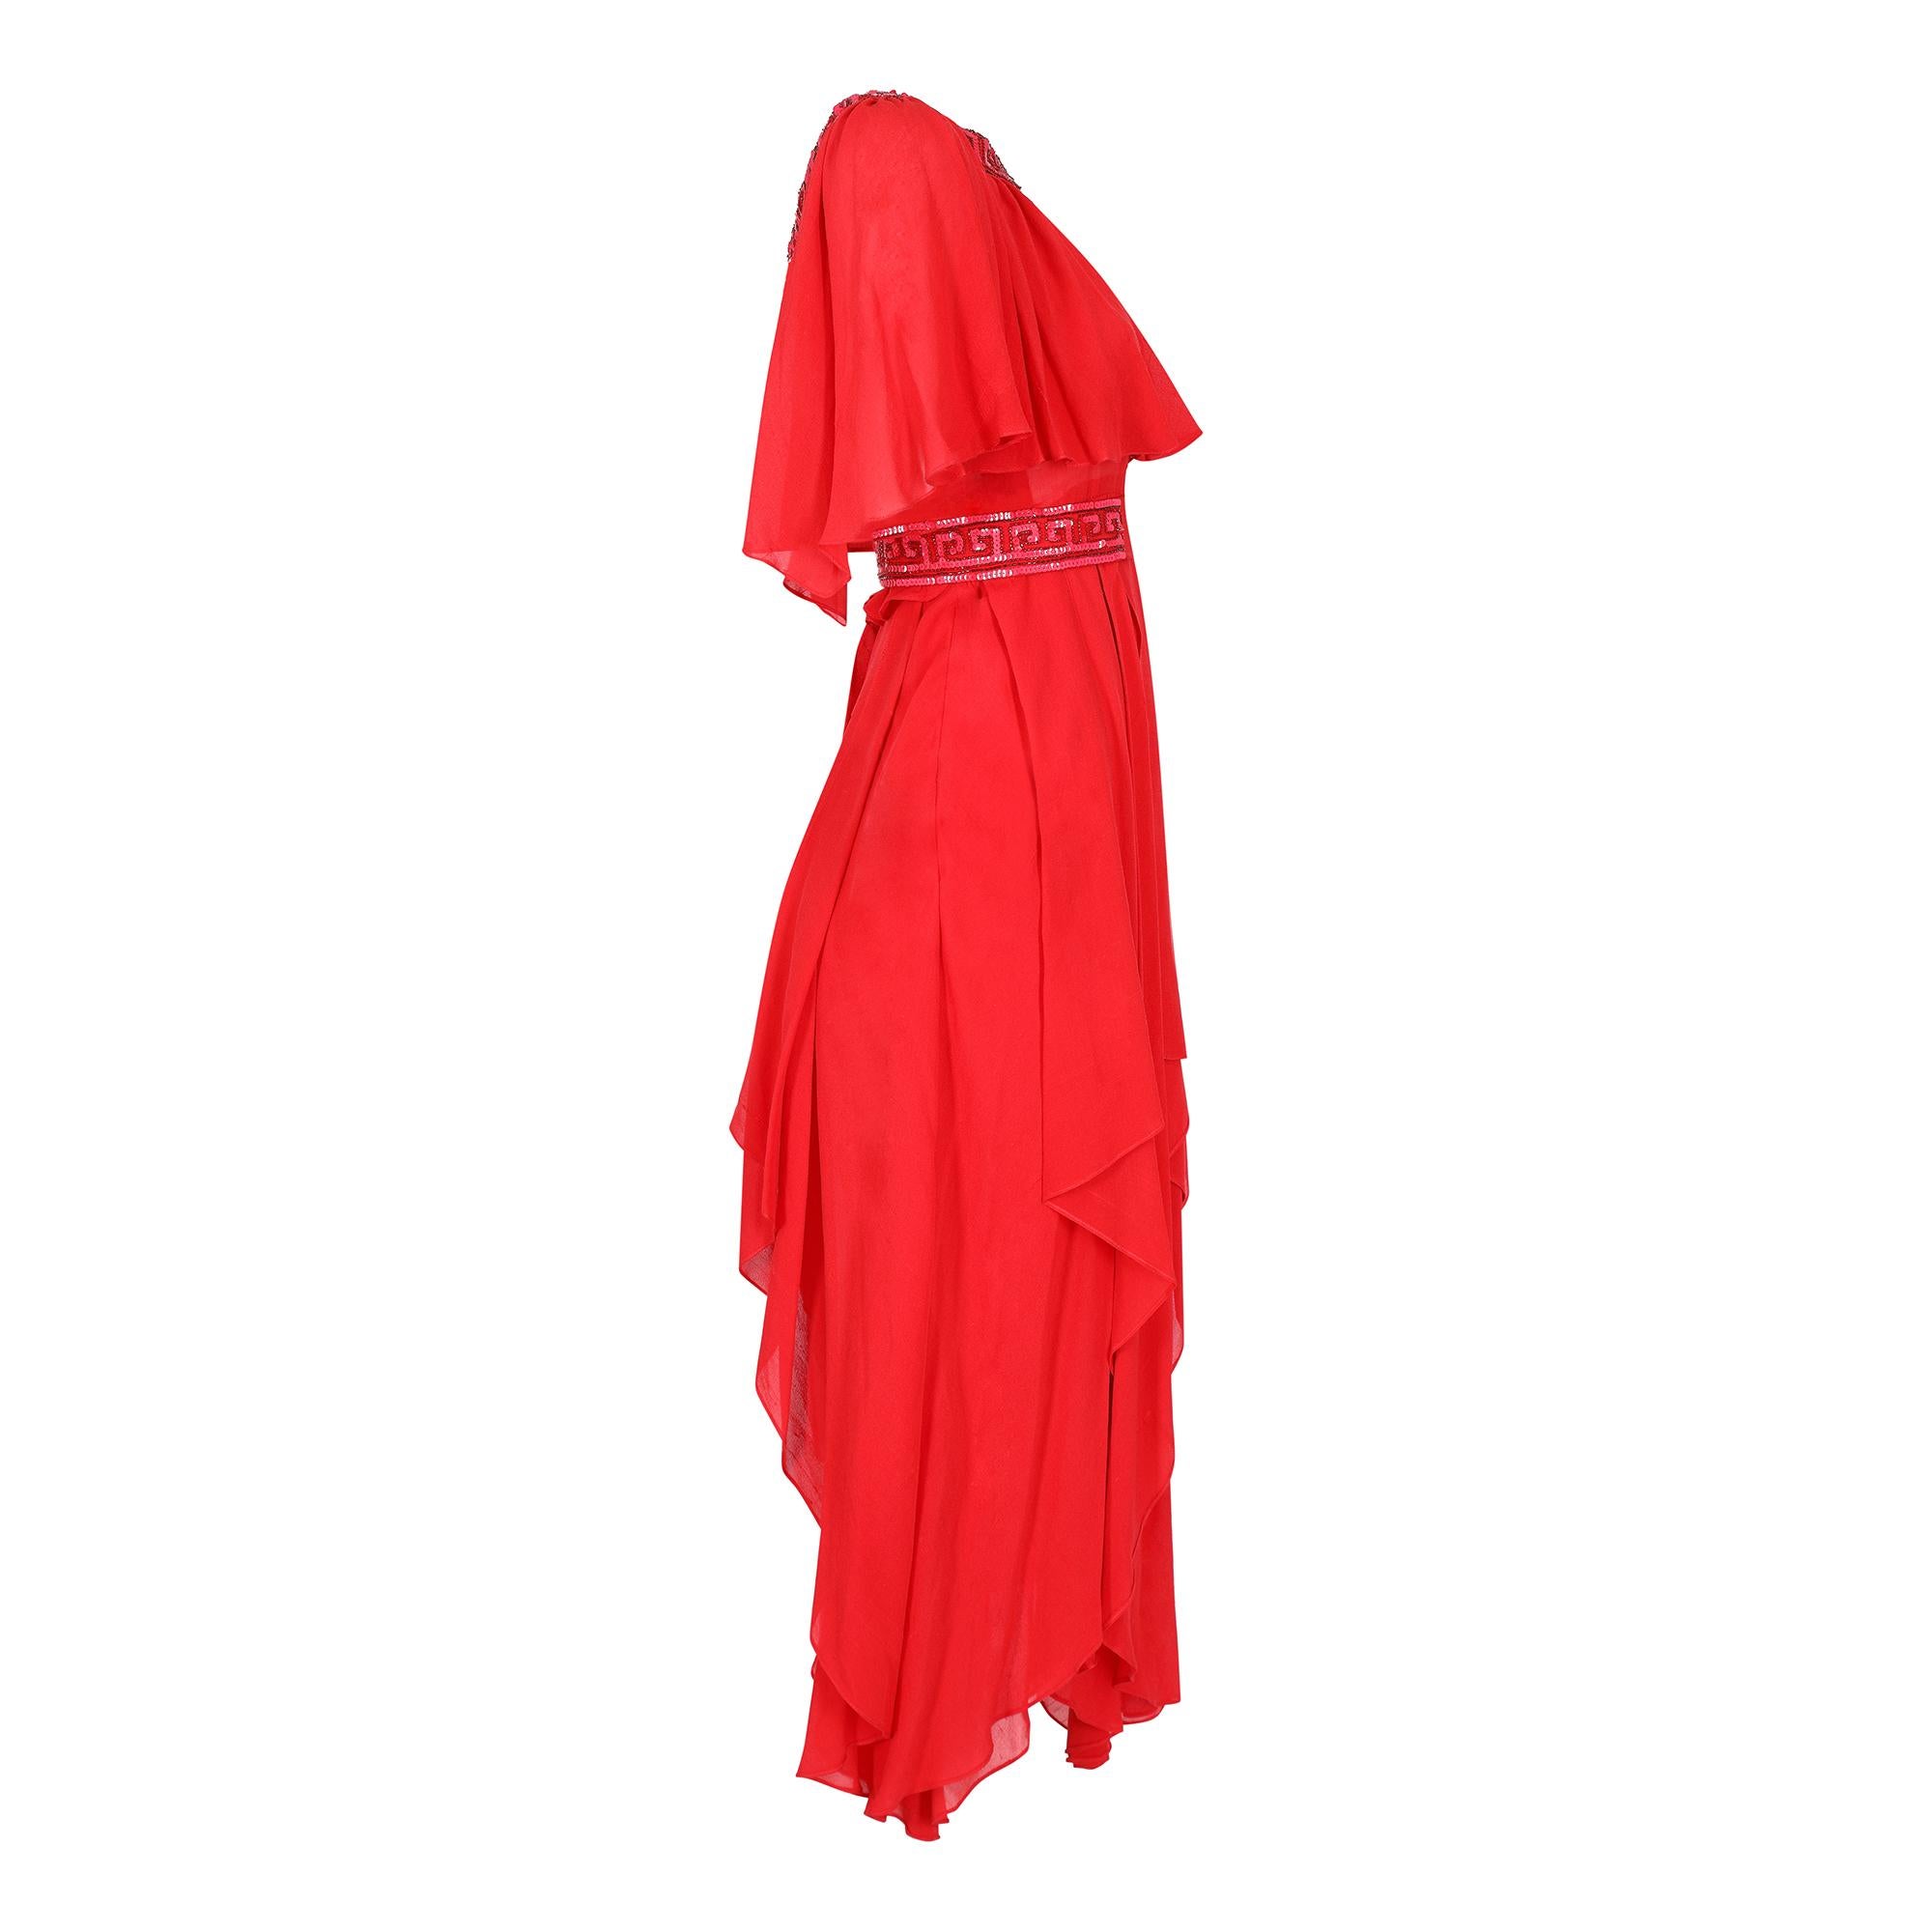 Cette robe Ted Lapidus date d'environ 1977 et a été réalisée entièrement à la main ; ce label est probablement celui de la haute couture. Le magnifique tissu georgette de soie grège rouge flamme est à la fois saisissant et féminin. La robe présente